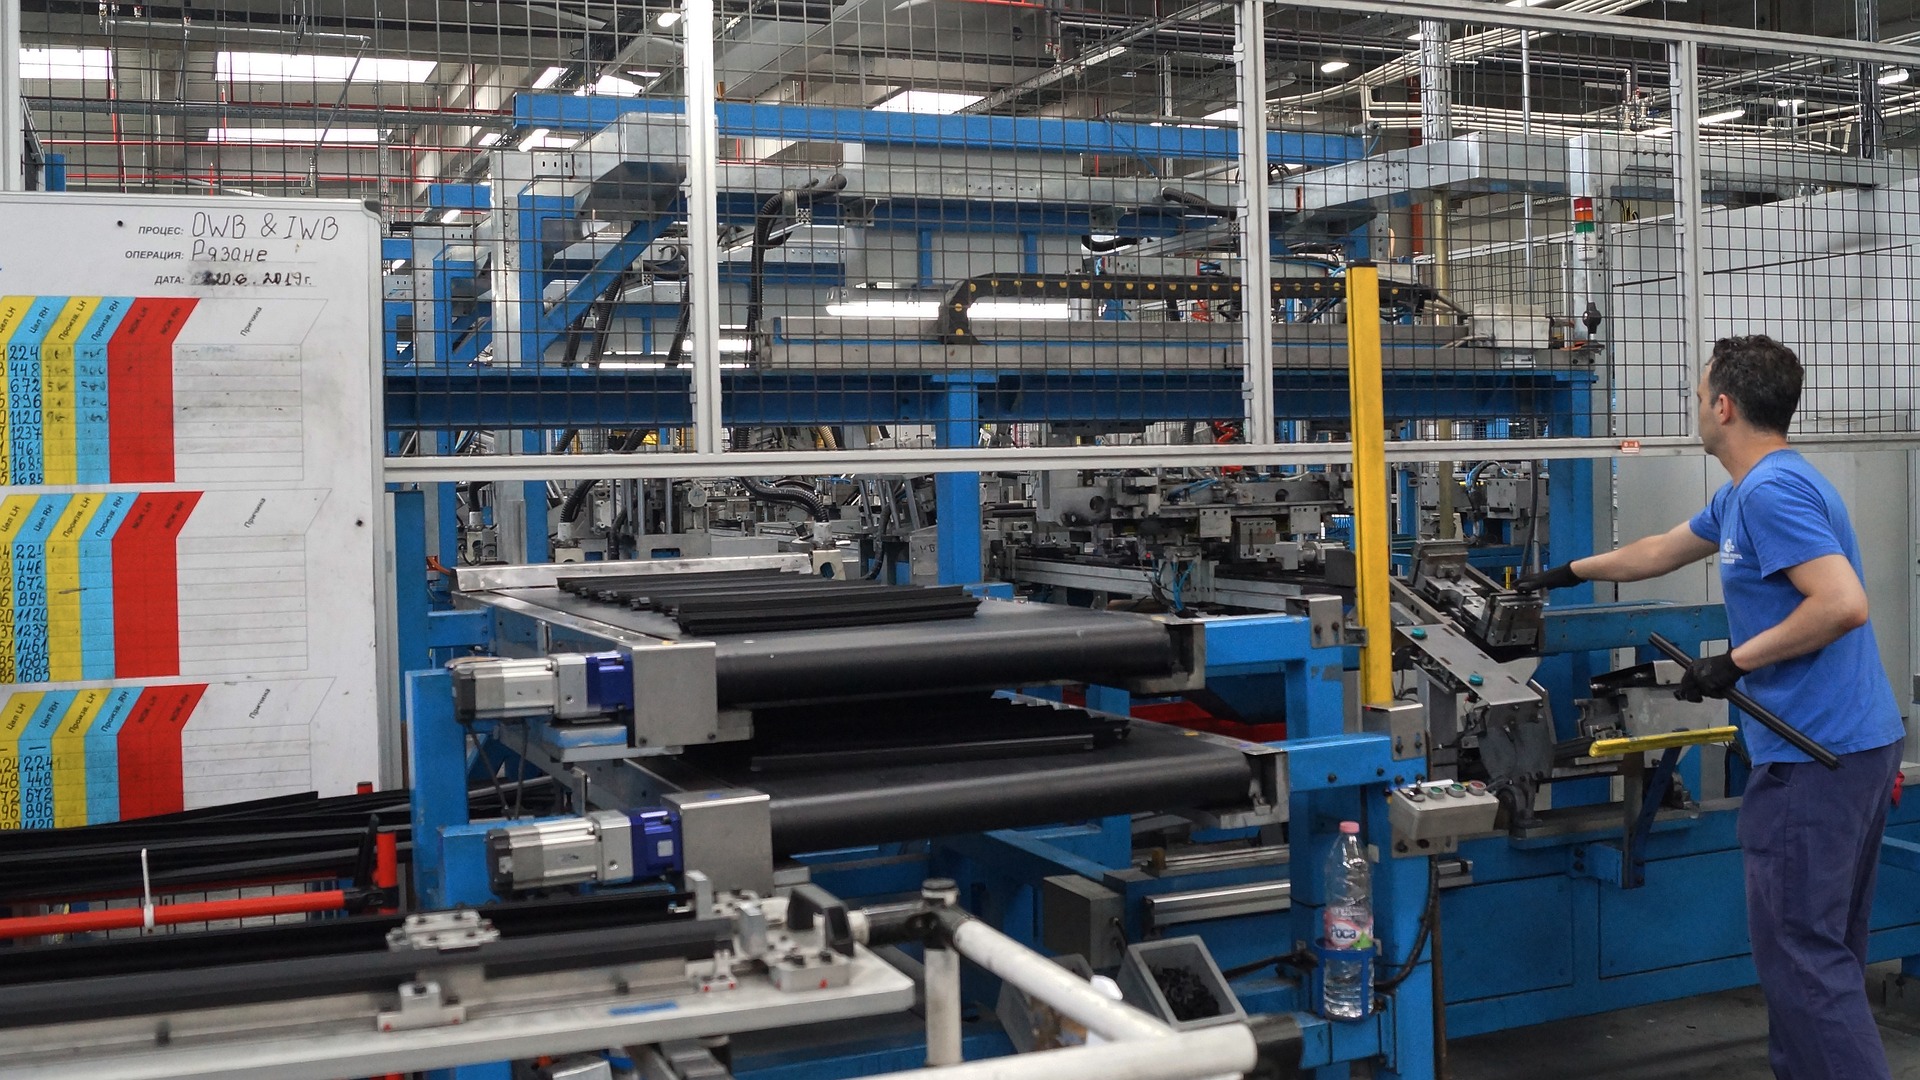 הטכנולוגיה המתקדמת מגיעה גם למפעלים – כל היתרונות של אוטומציה לתעשייה